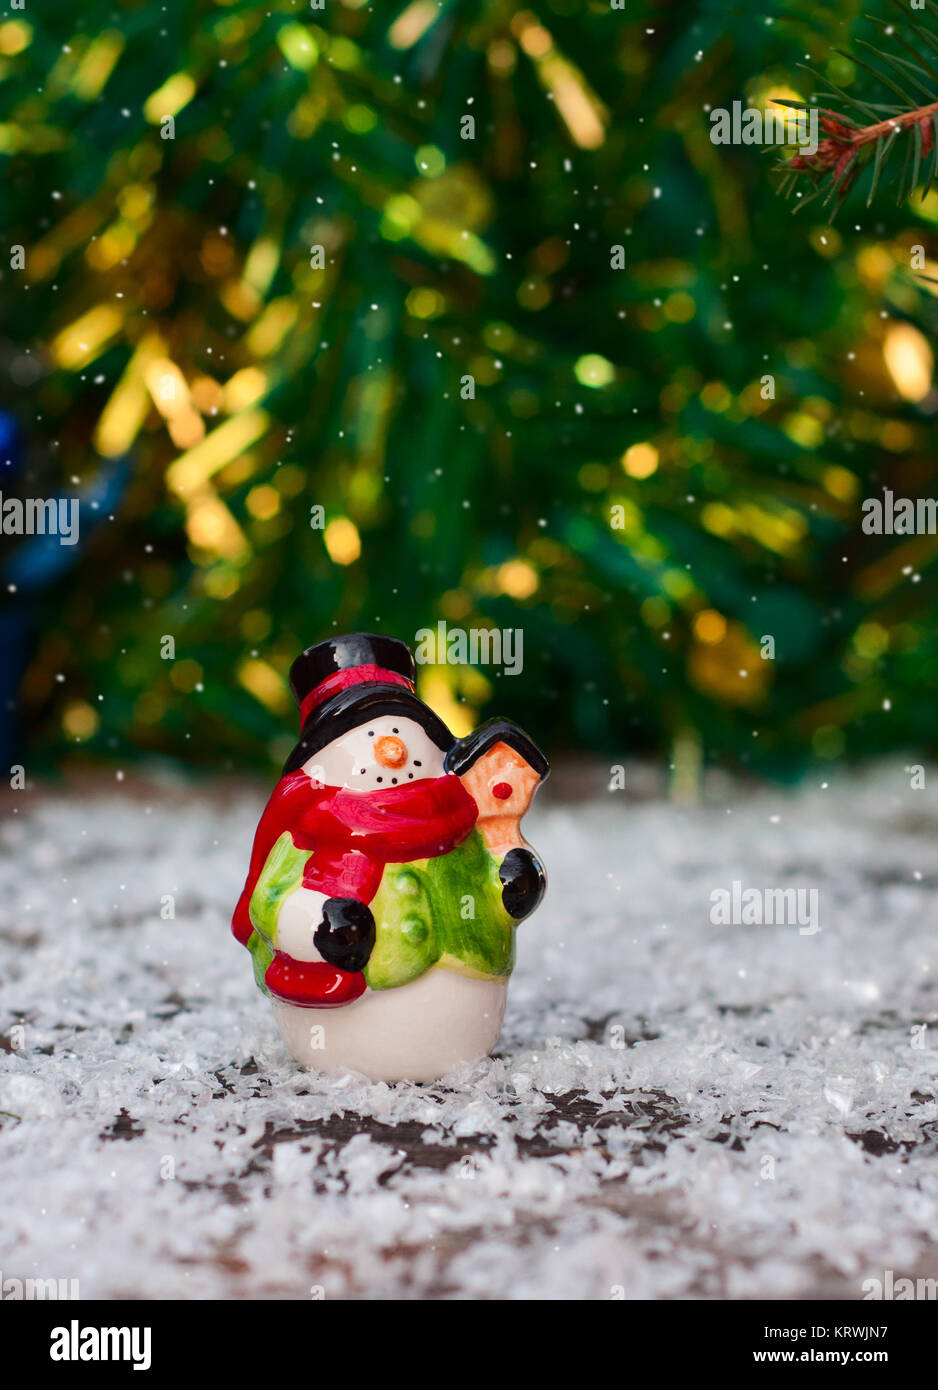  Green Christmas Mug Snowman and Christmas Tree Snow